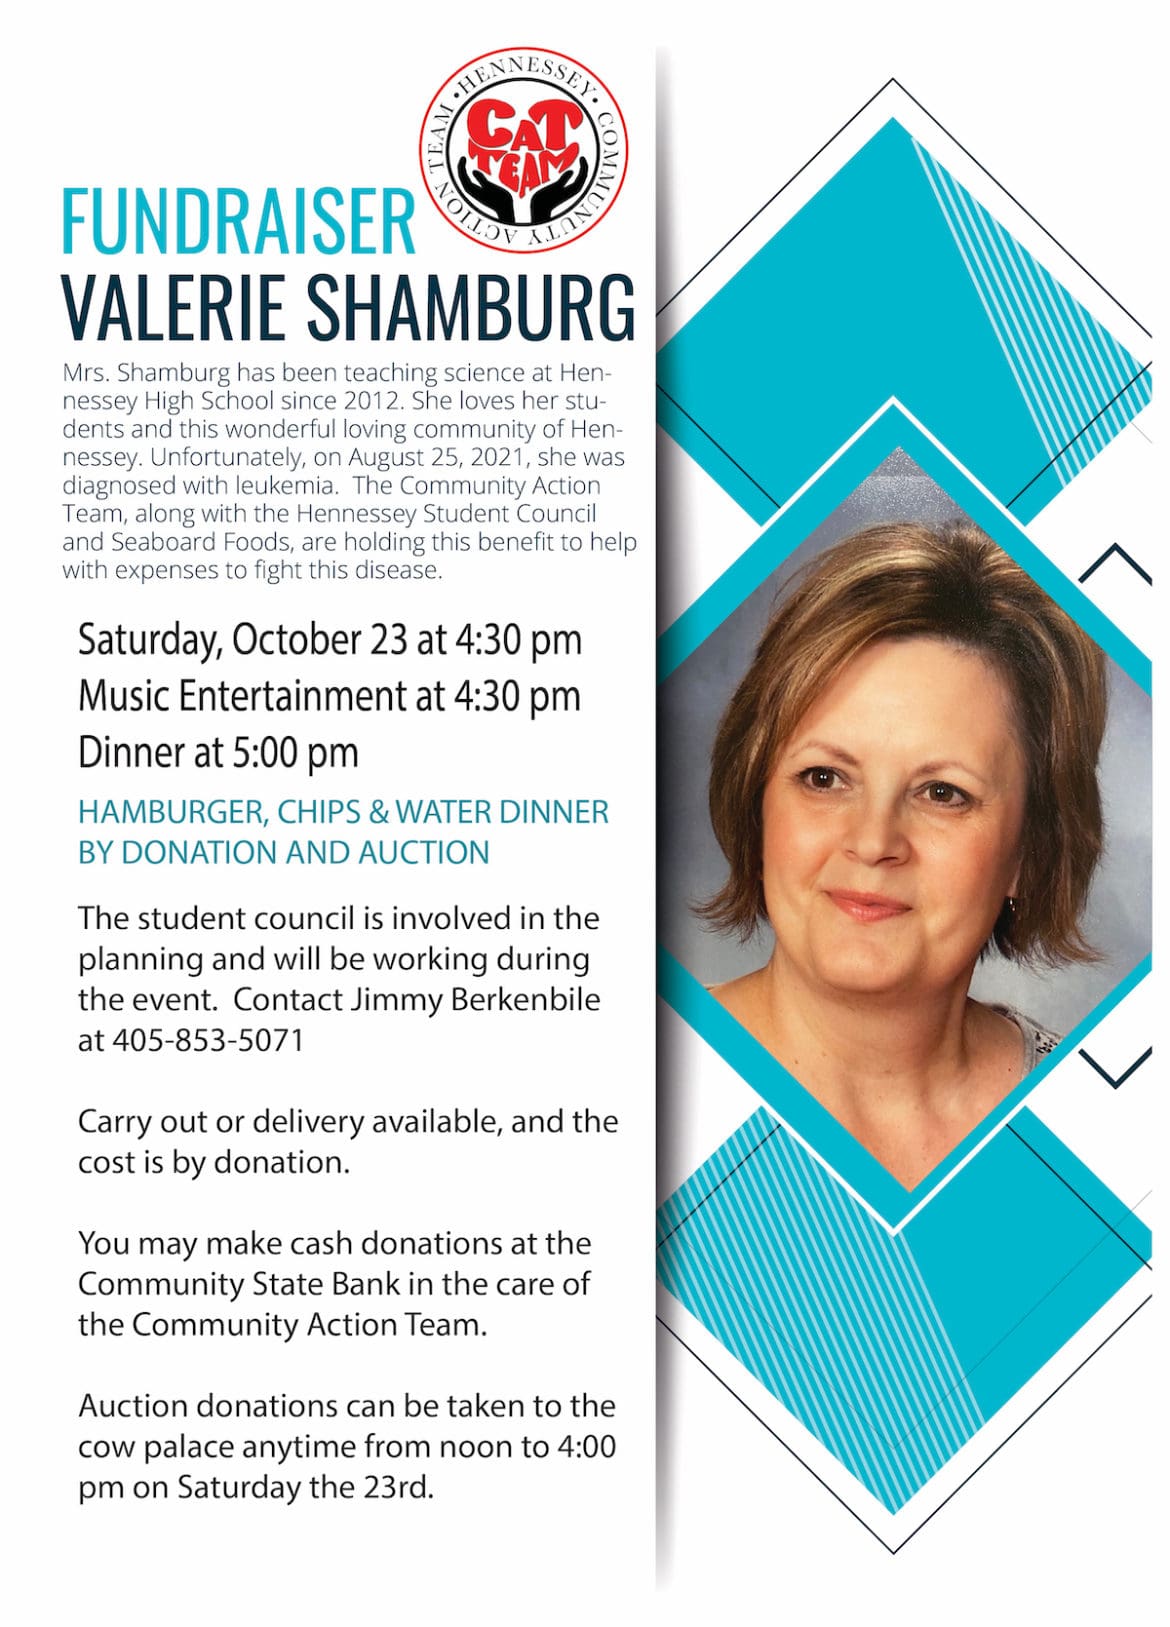 Fundraiser for Valerie Shamburg